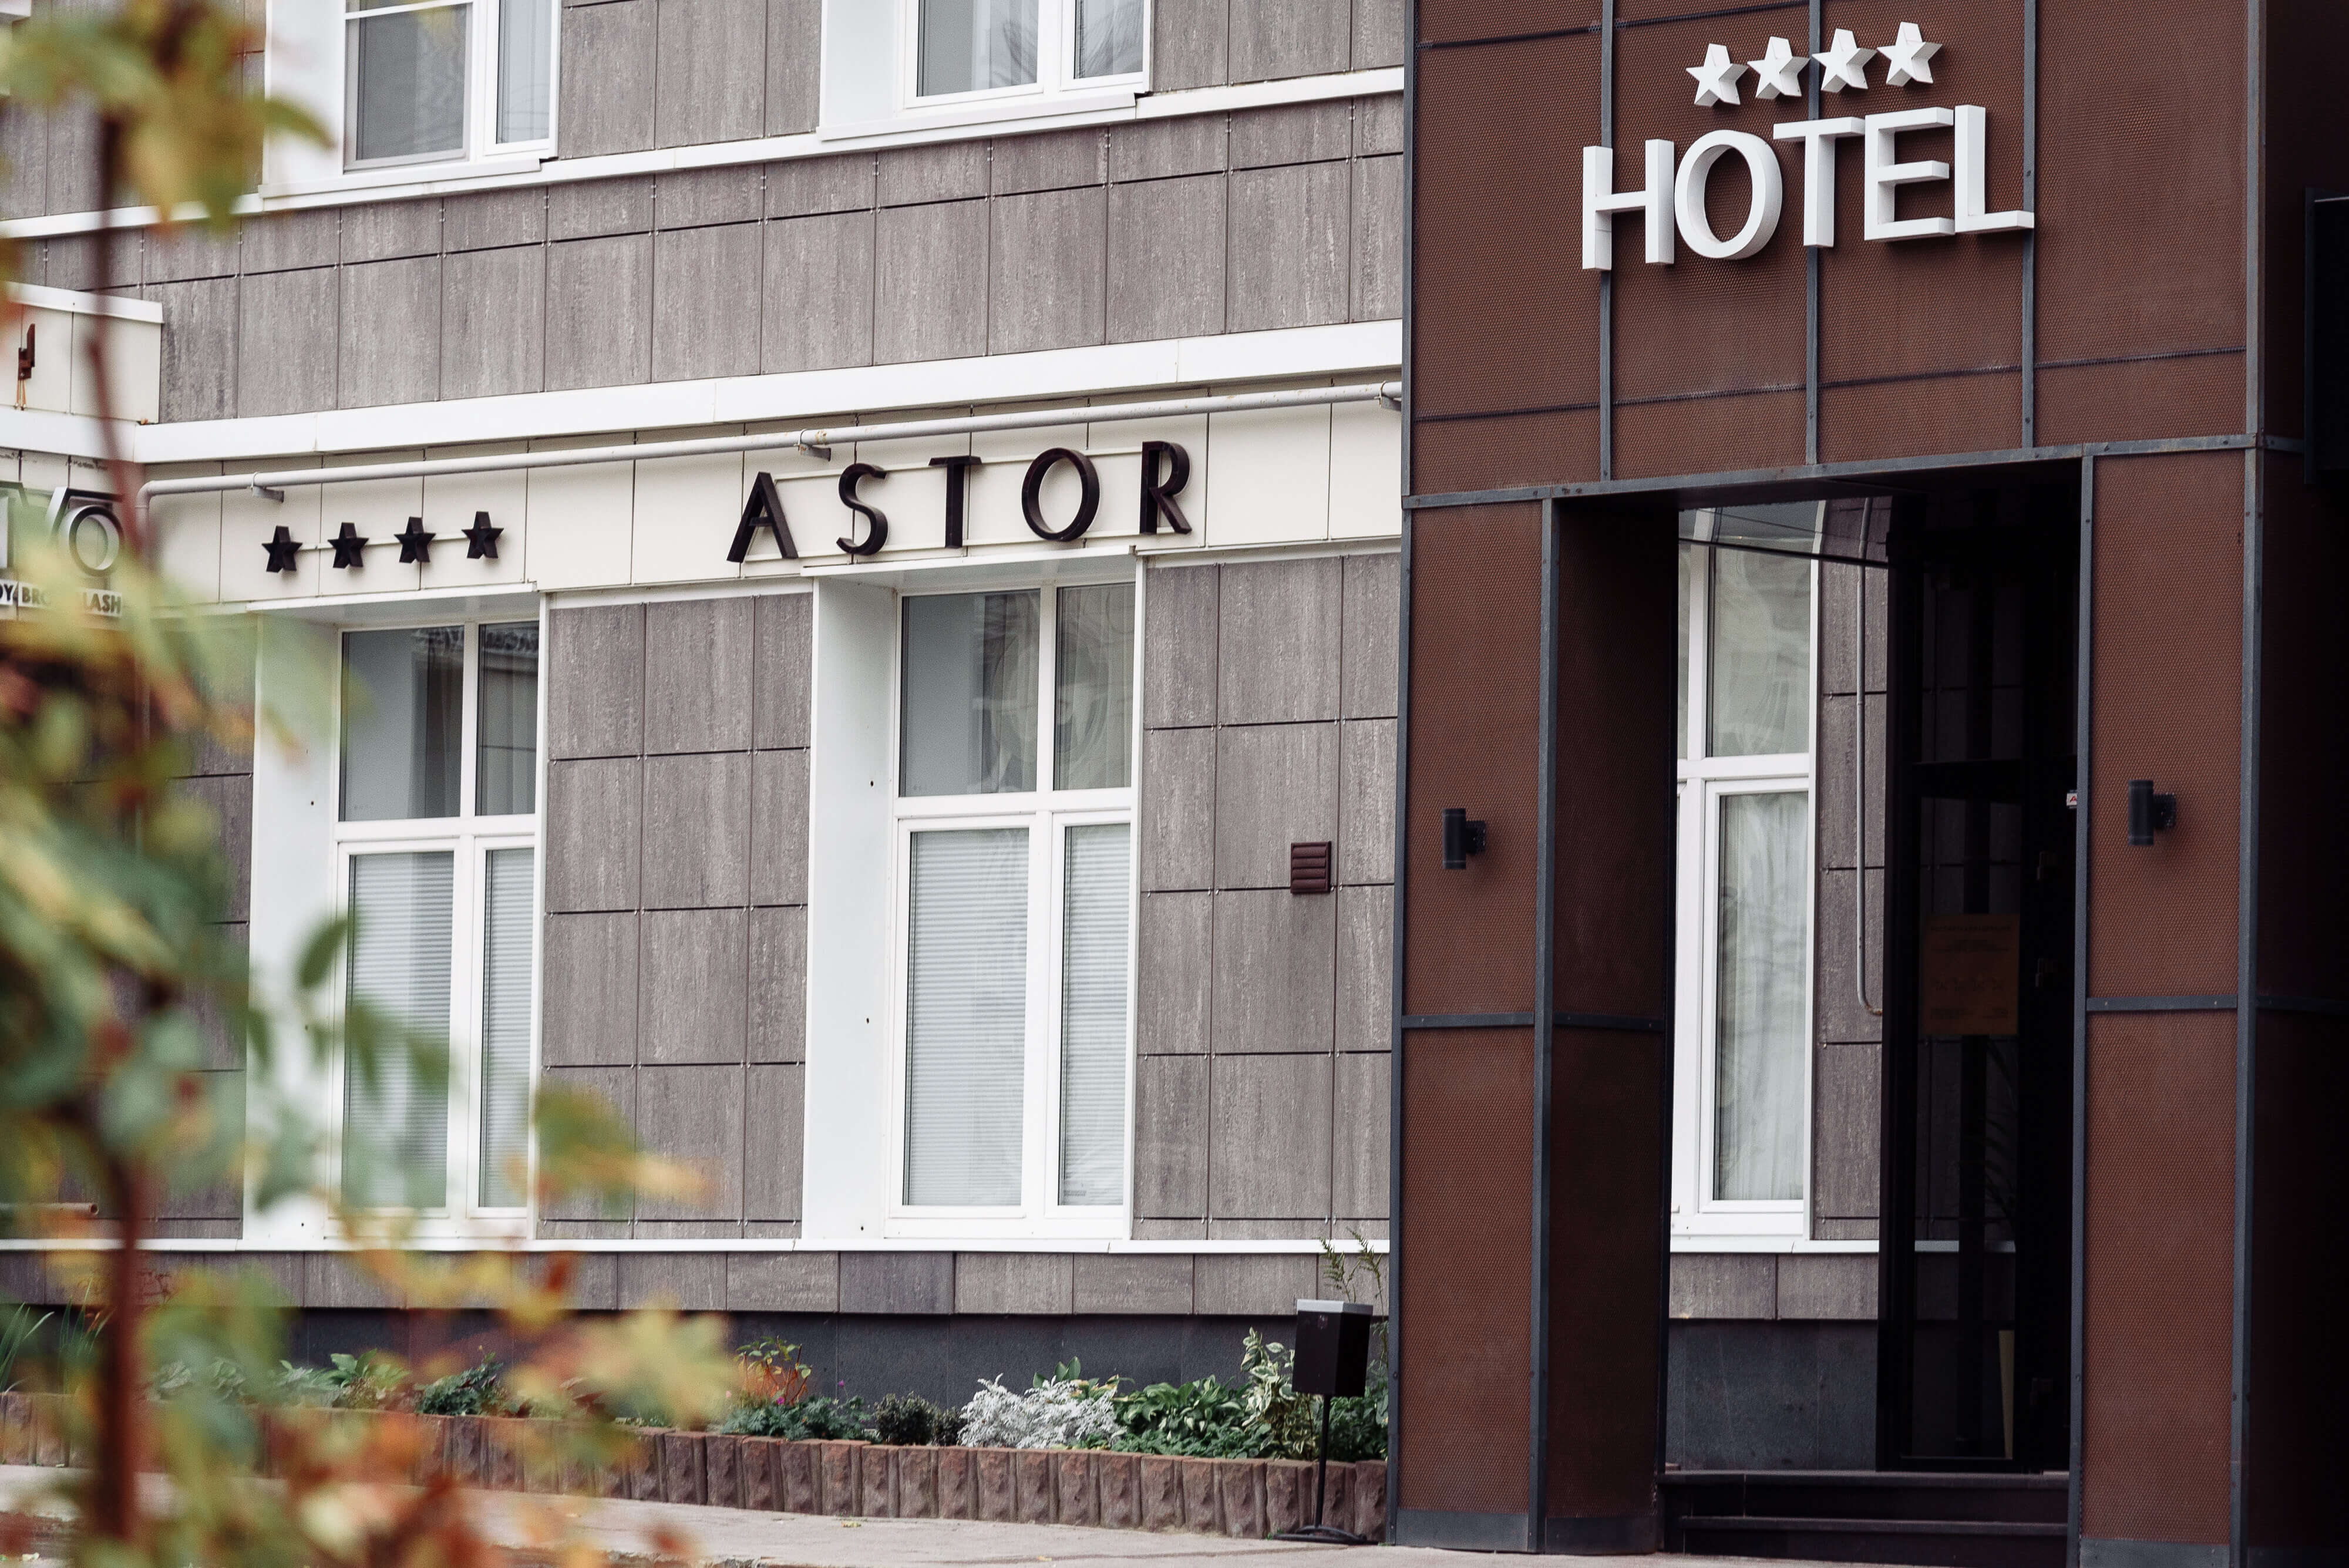 ASTOR Hotel. Фасад отеля.